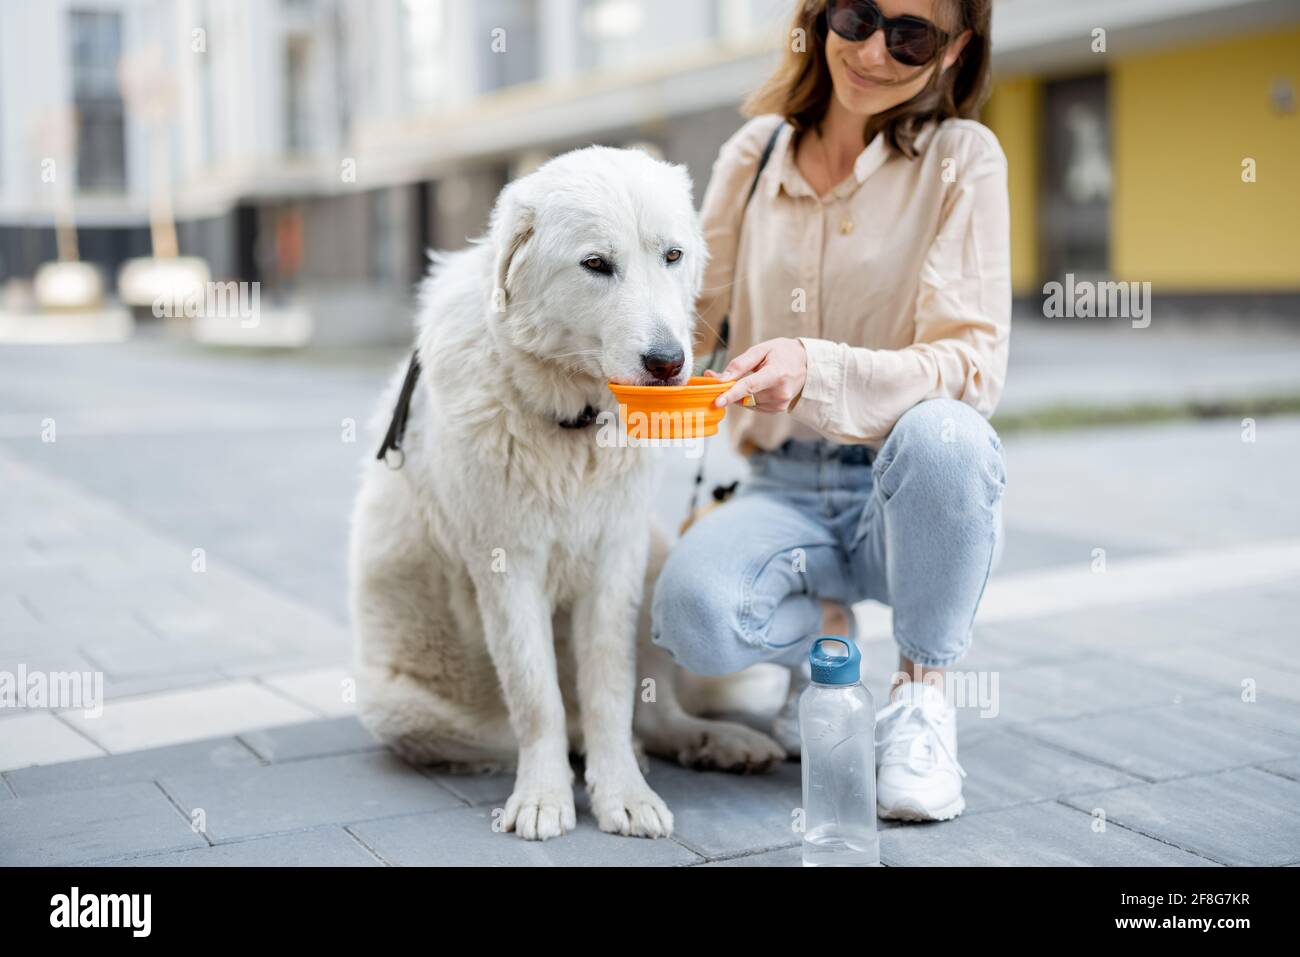 Frau hält eine Schüssel und gibt ihrem großen weißen Hund Wasser, während sie auf ihren Füßen im Hof der Residenz sitzt. Tierpflege, Tierliebhaber. Durstiger Hund trinkt im heißen Sommer Wasser Stockfoto